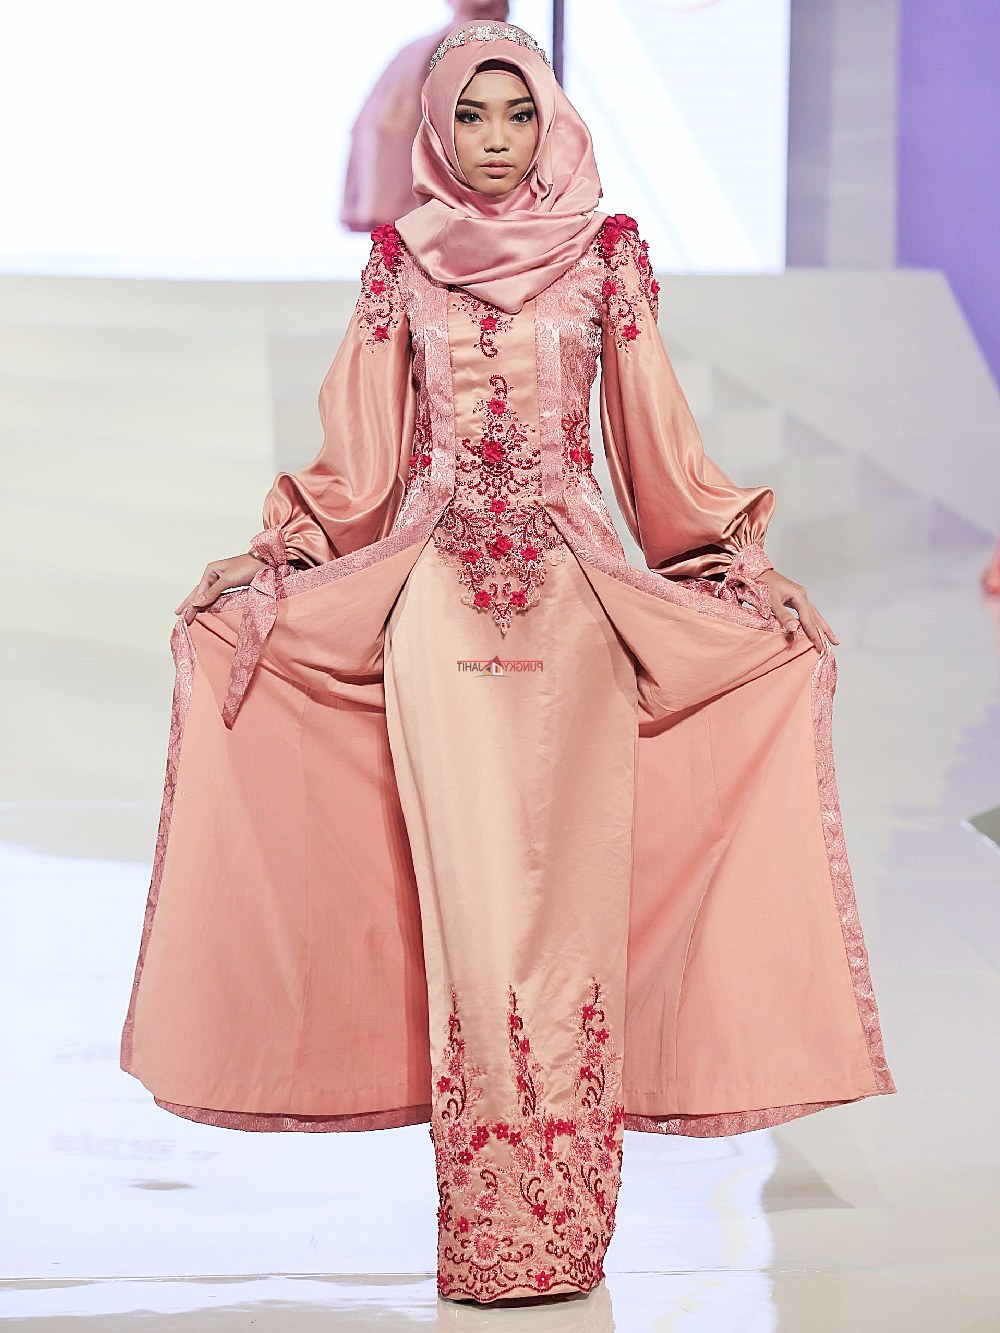 Bentuk Sewa Gaun Pengantin Muslimah Jogja Q5df Sewa Perdana Baju Pengantin Muslimah Jogja Gaun Pengantin